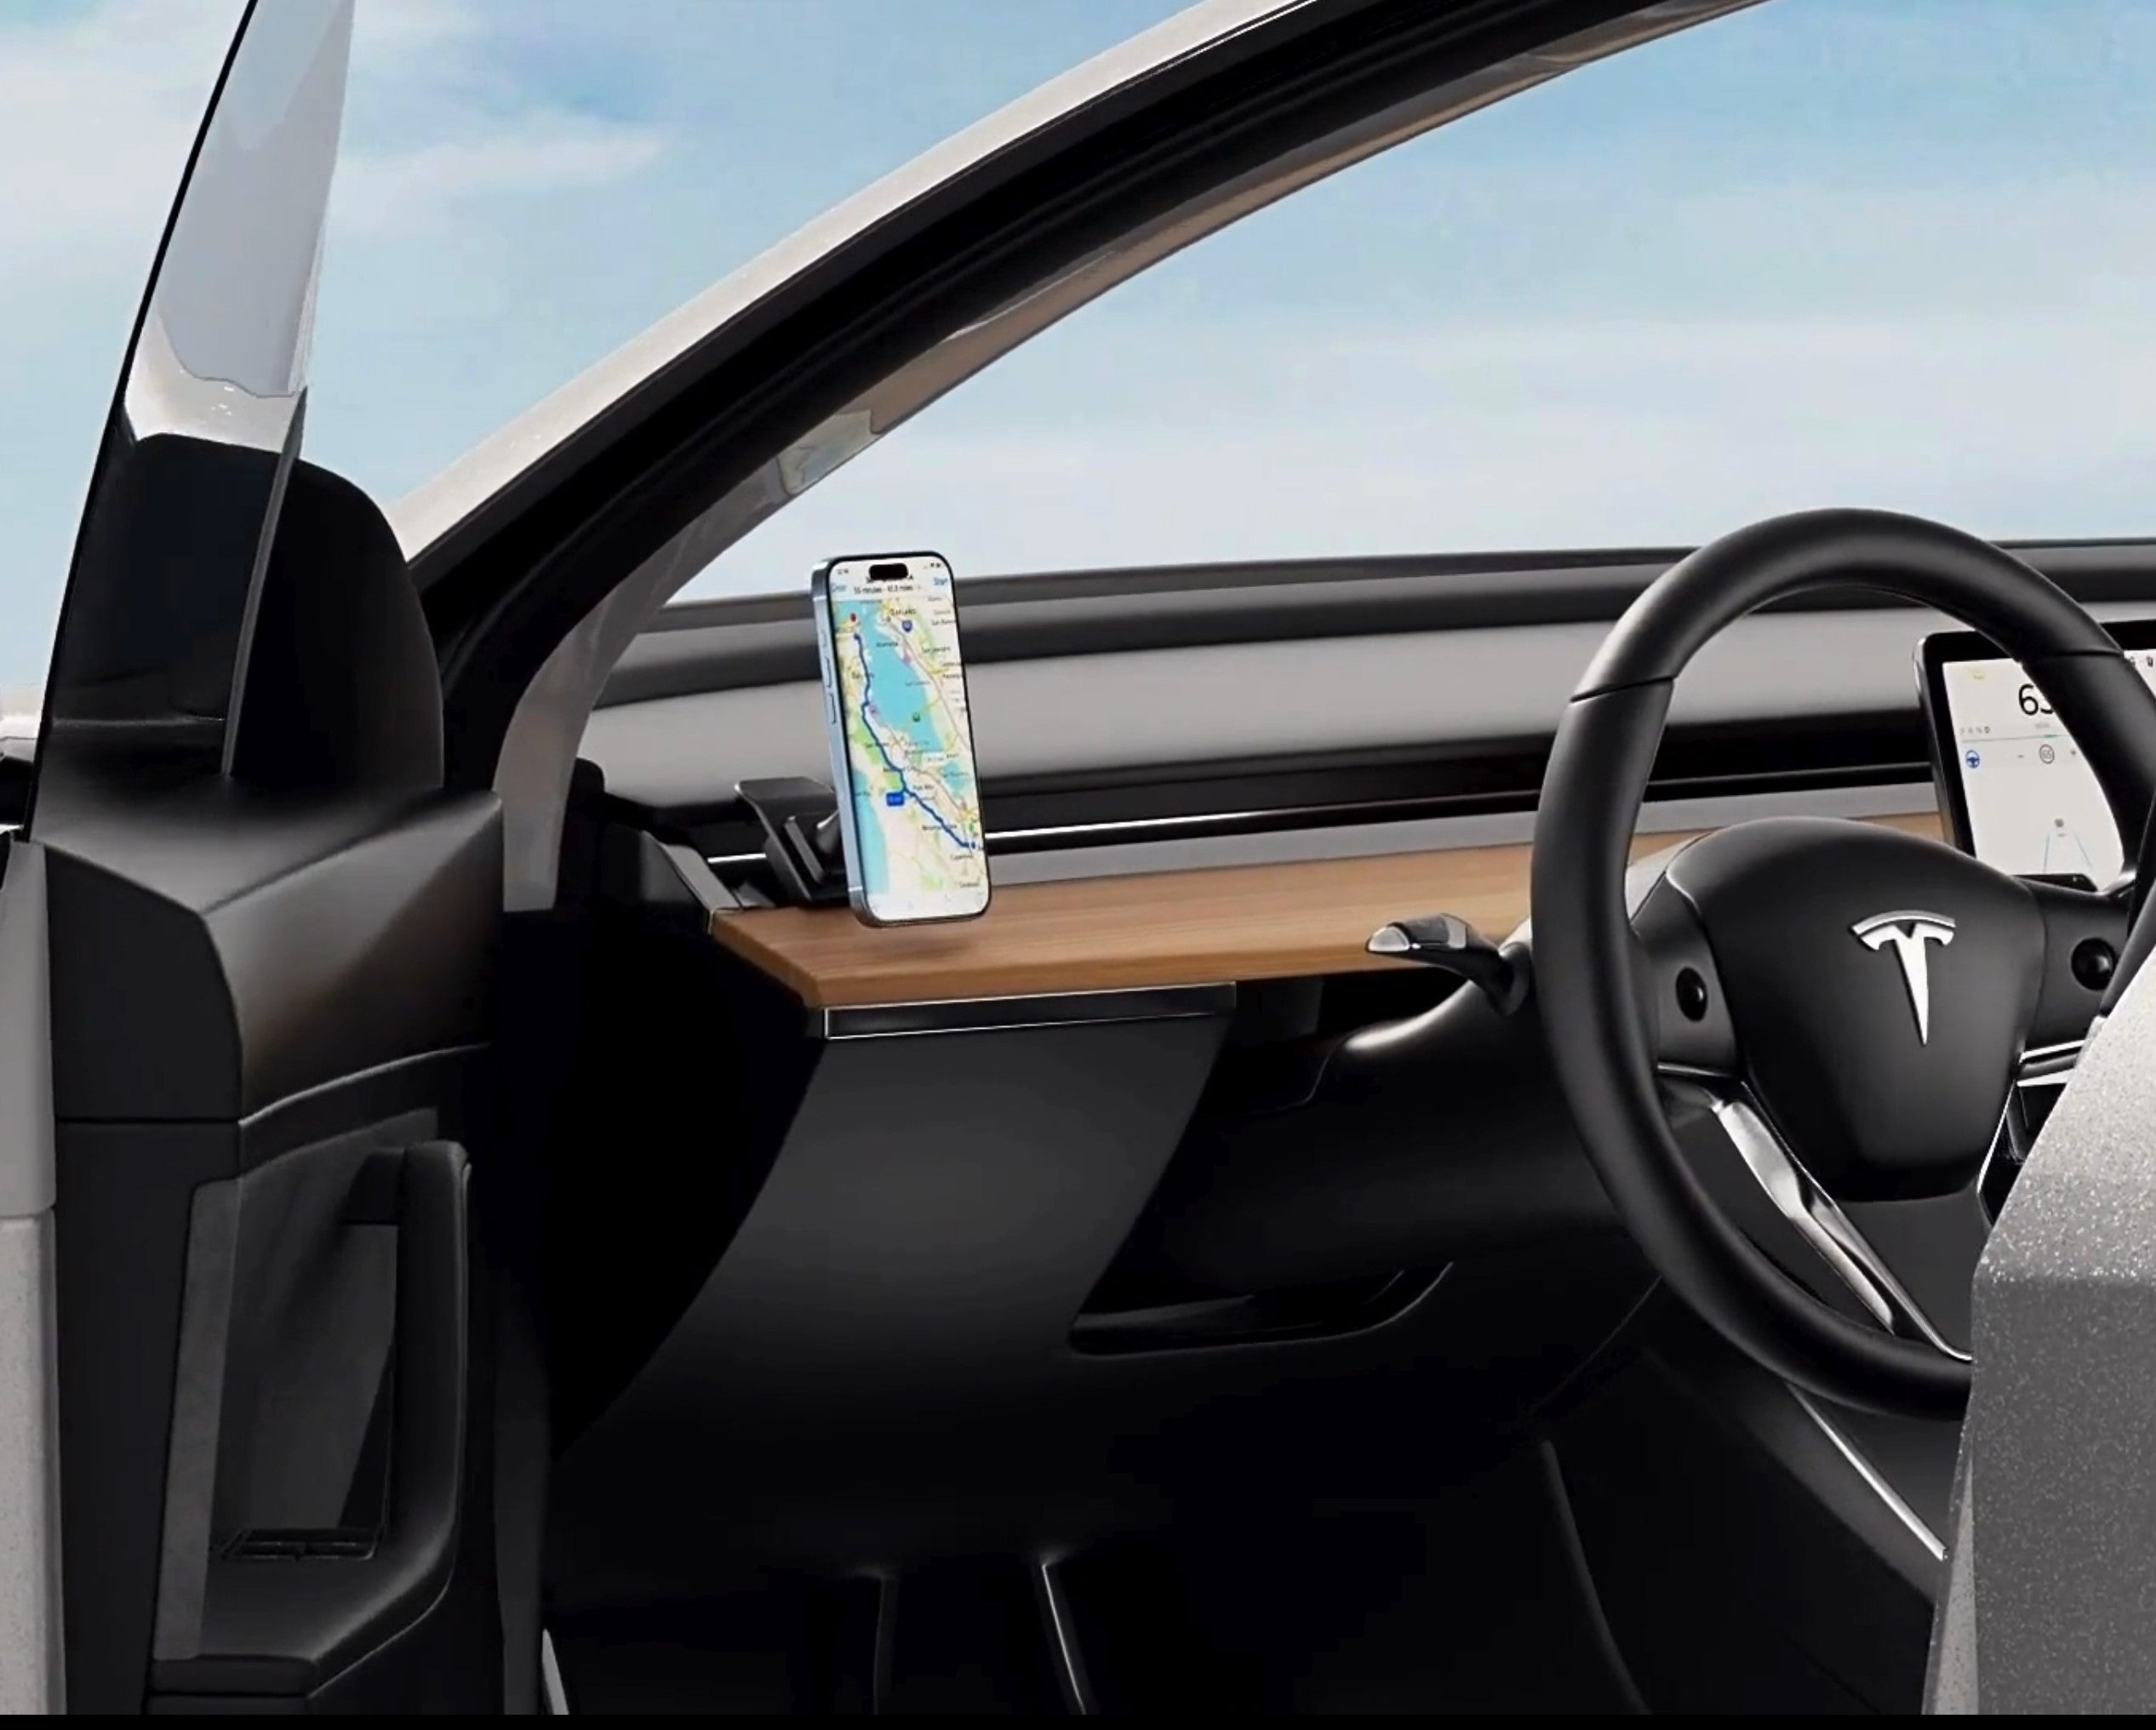 Celly mechanical Car Holder designed for Tesla Model X, Y, 3 & S